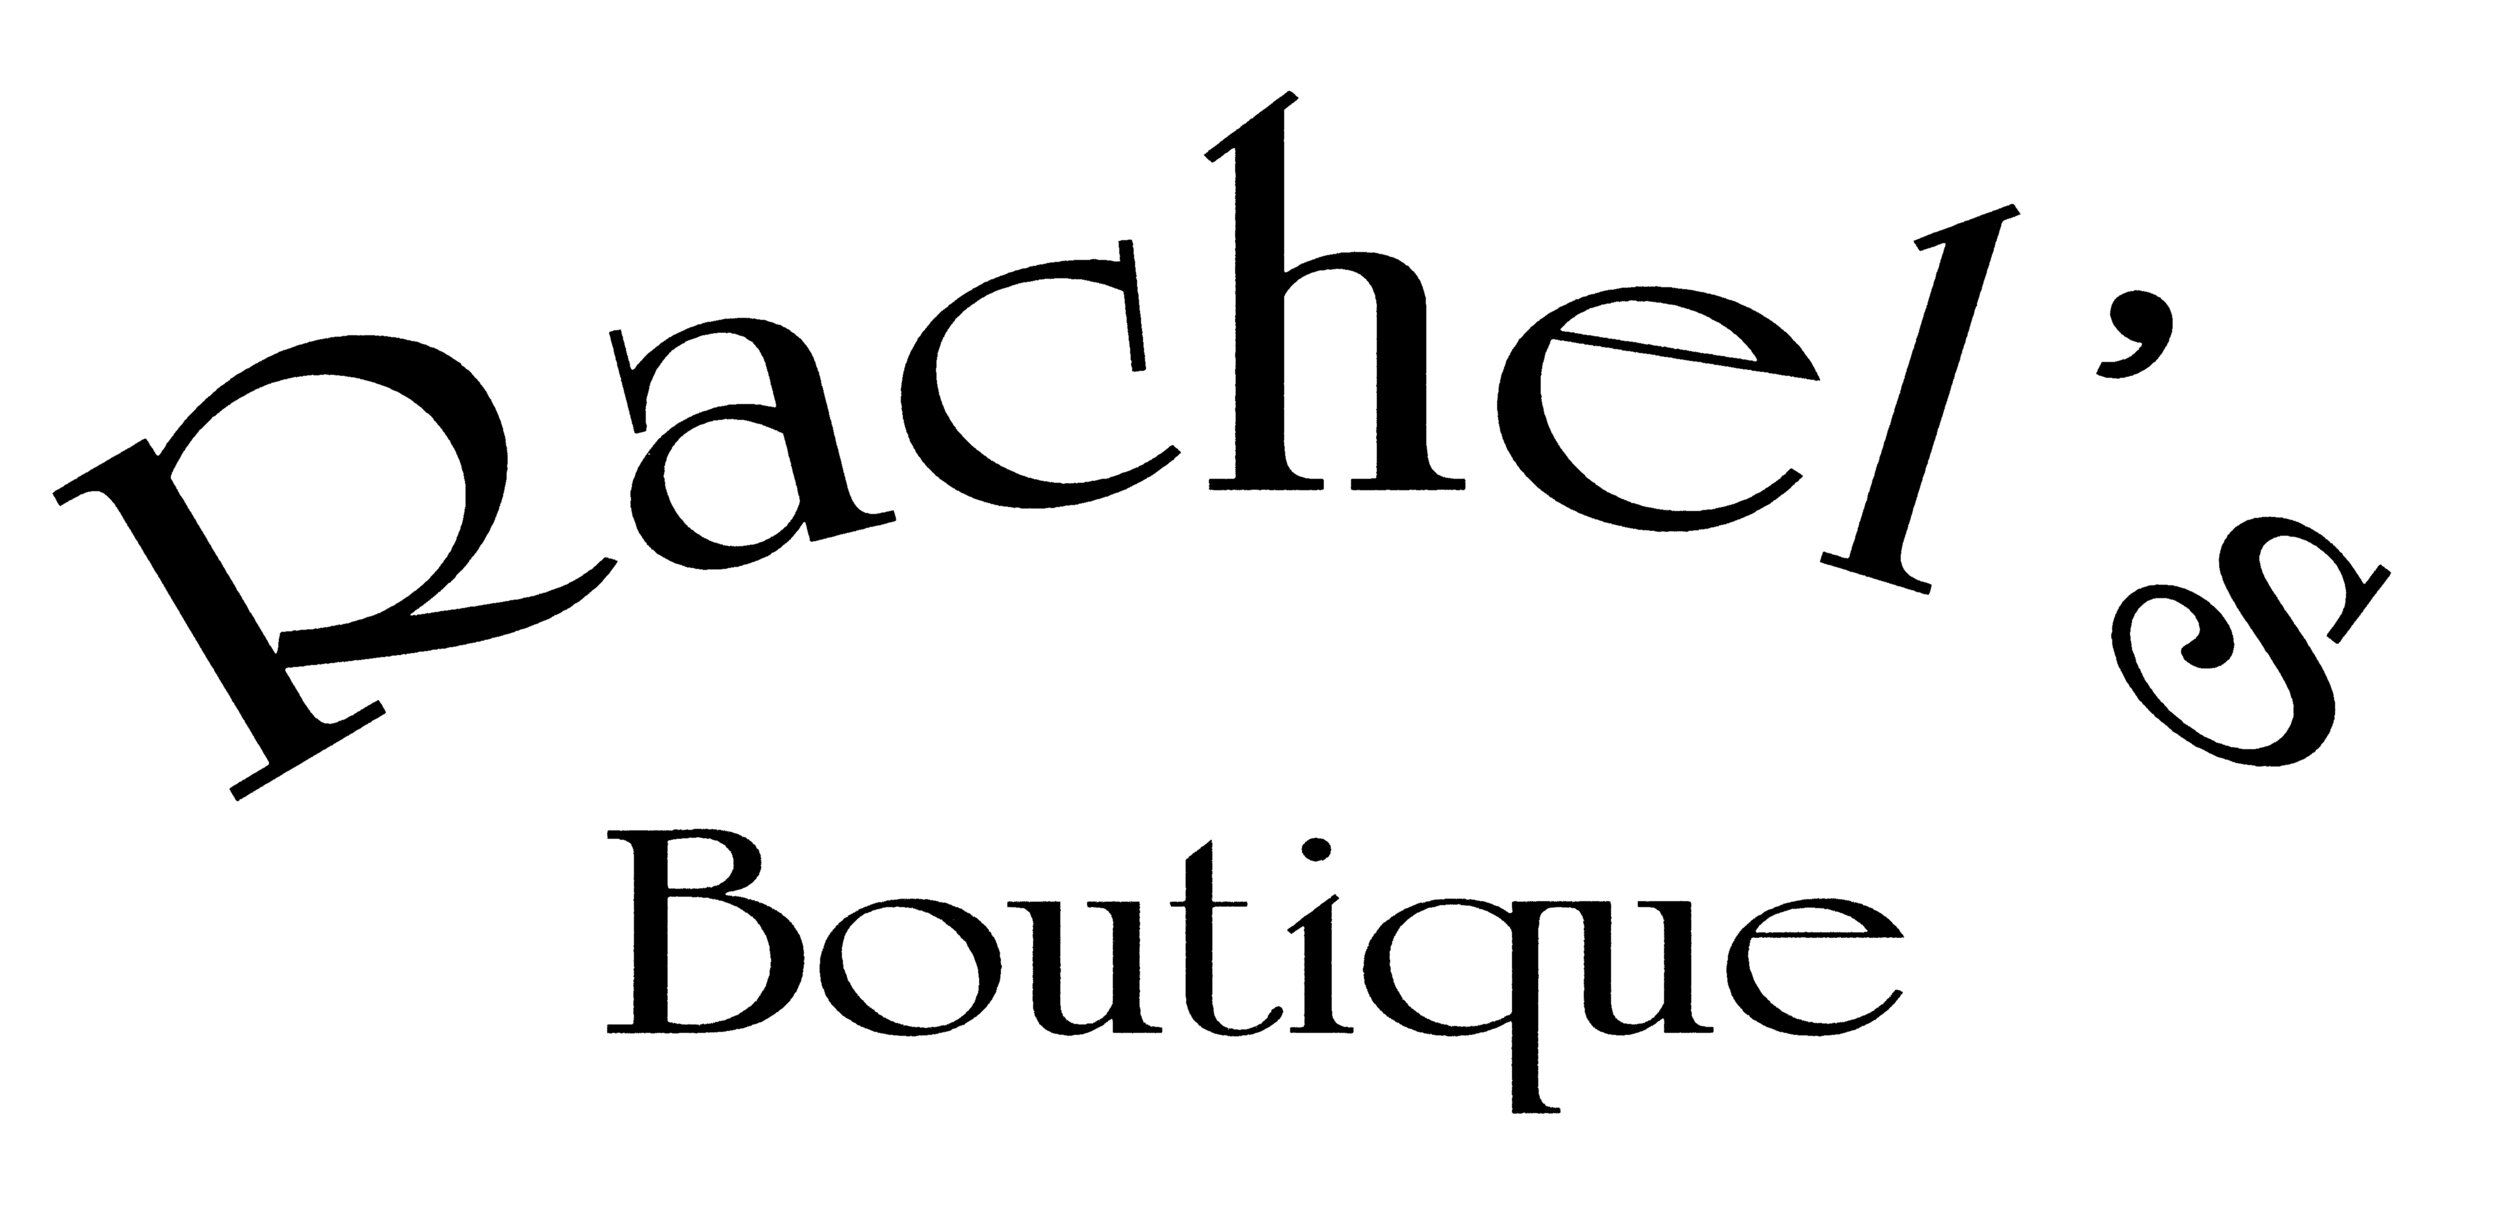 Rachel's Boutique